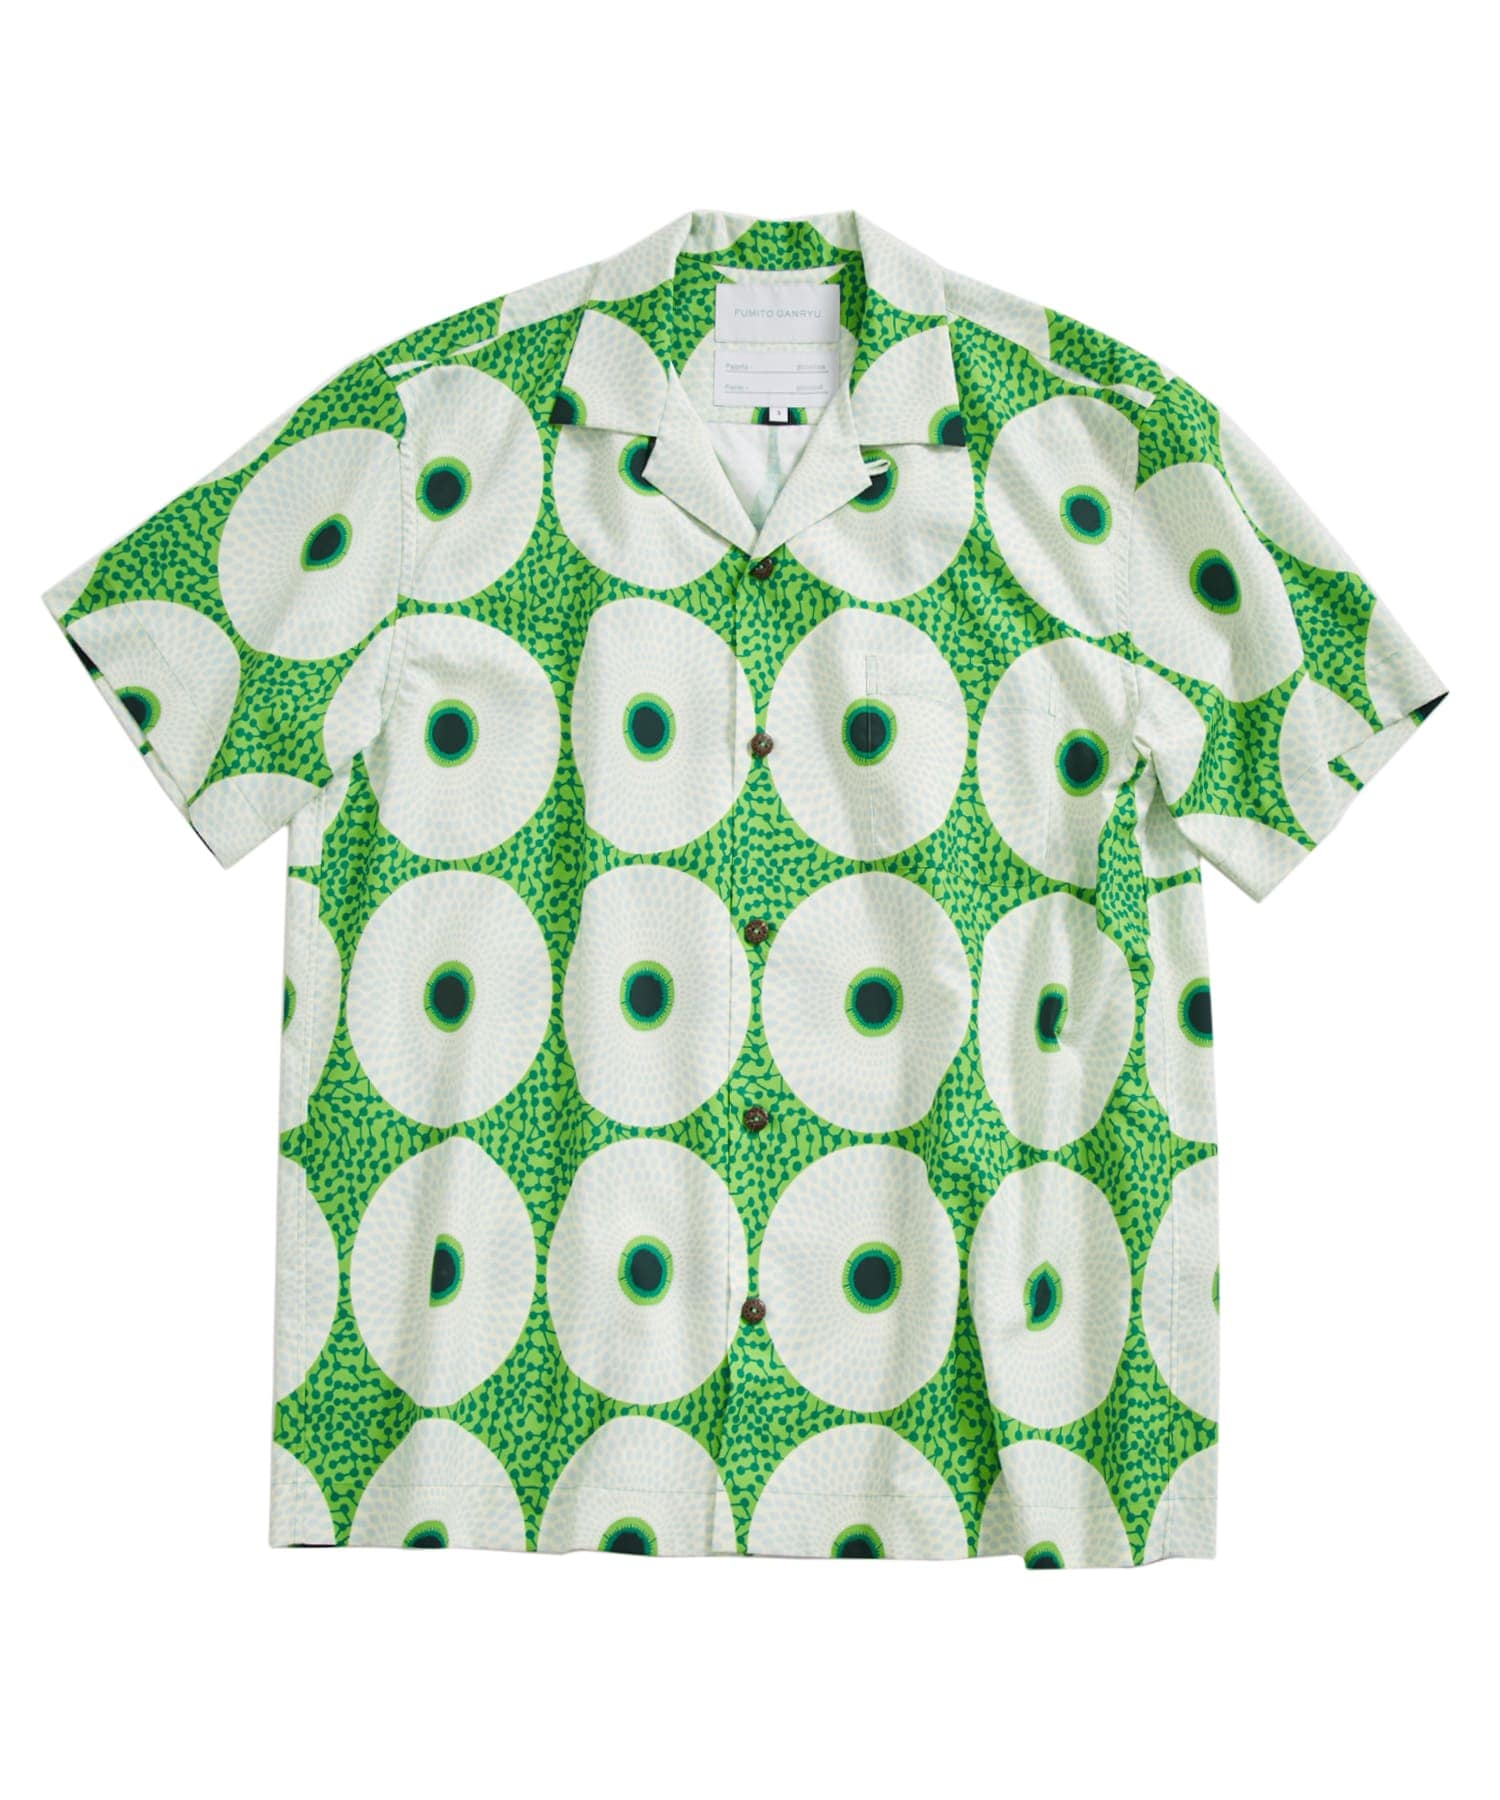 EX.Watteau pleats Hawaian shirt | FUMITO GANRYU